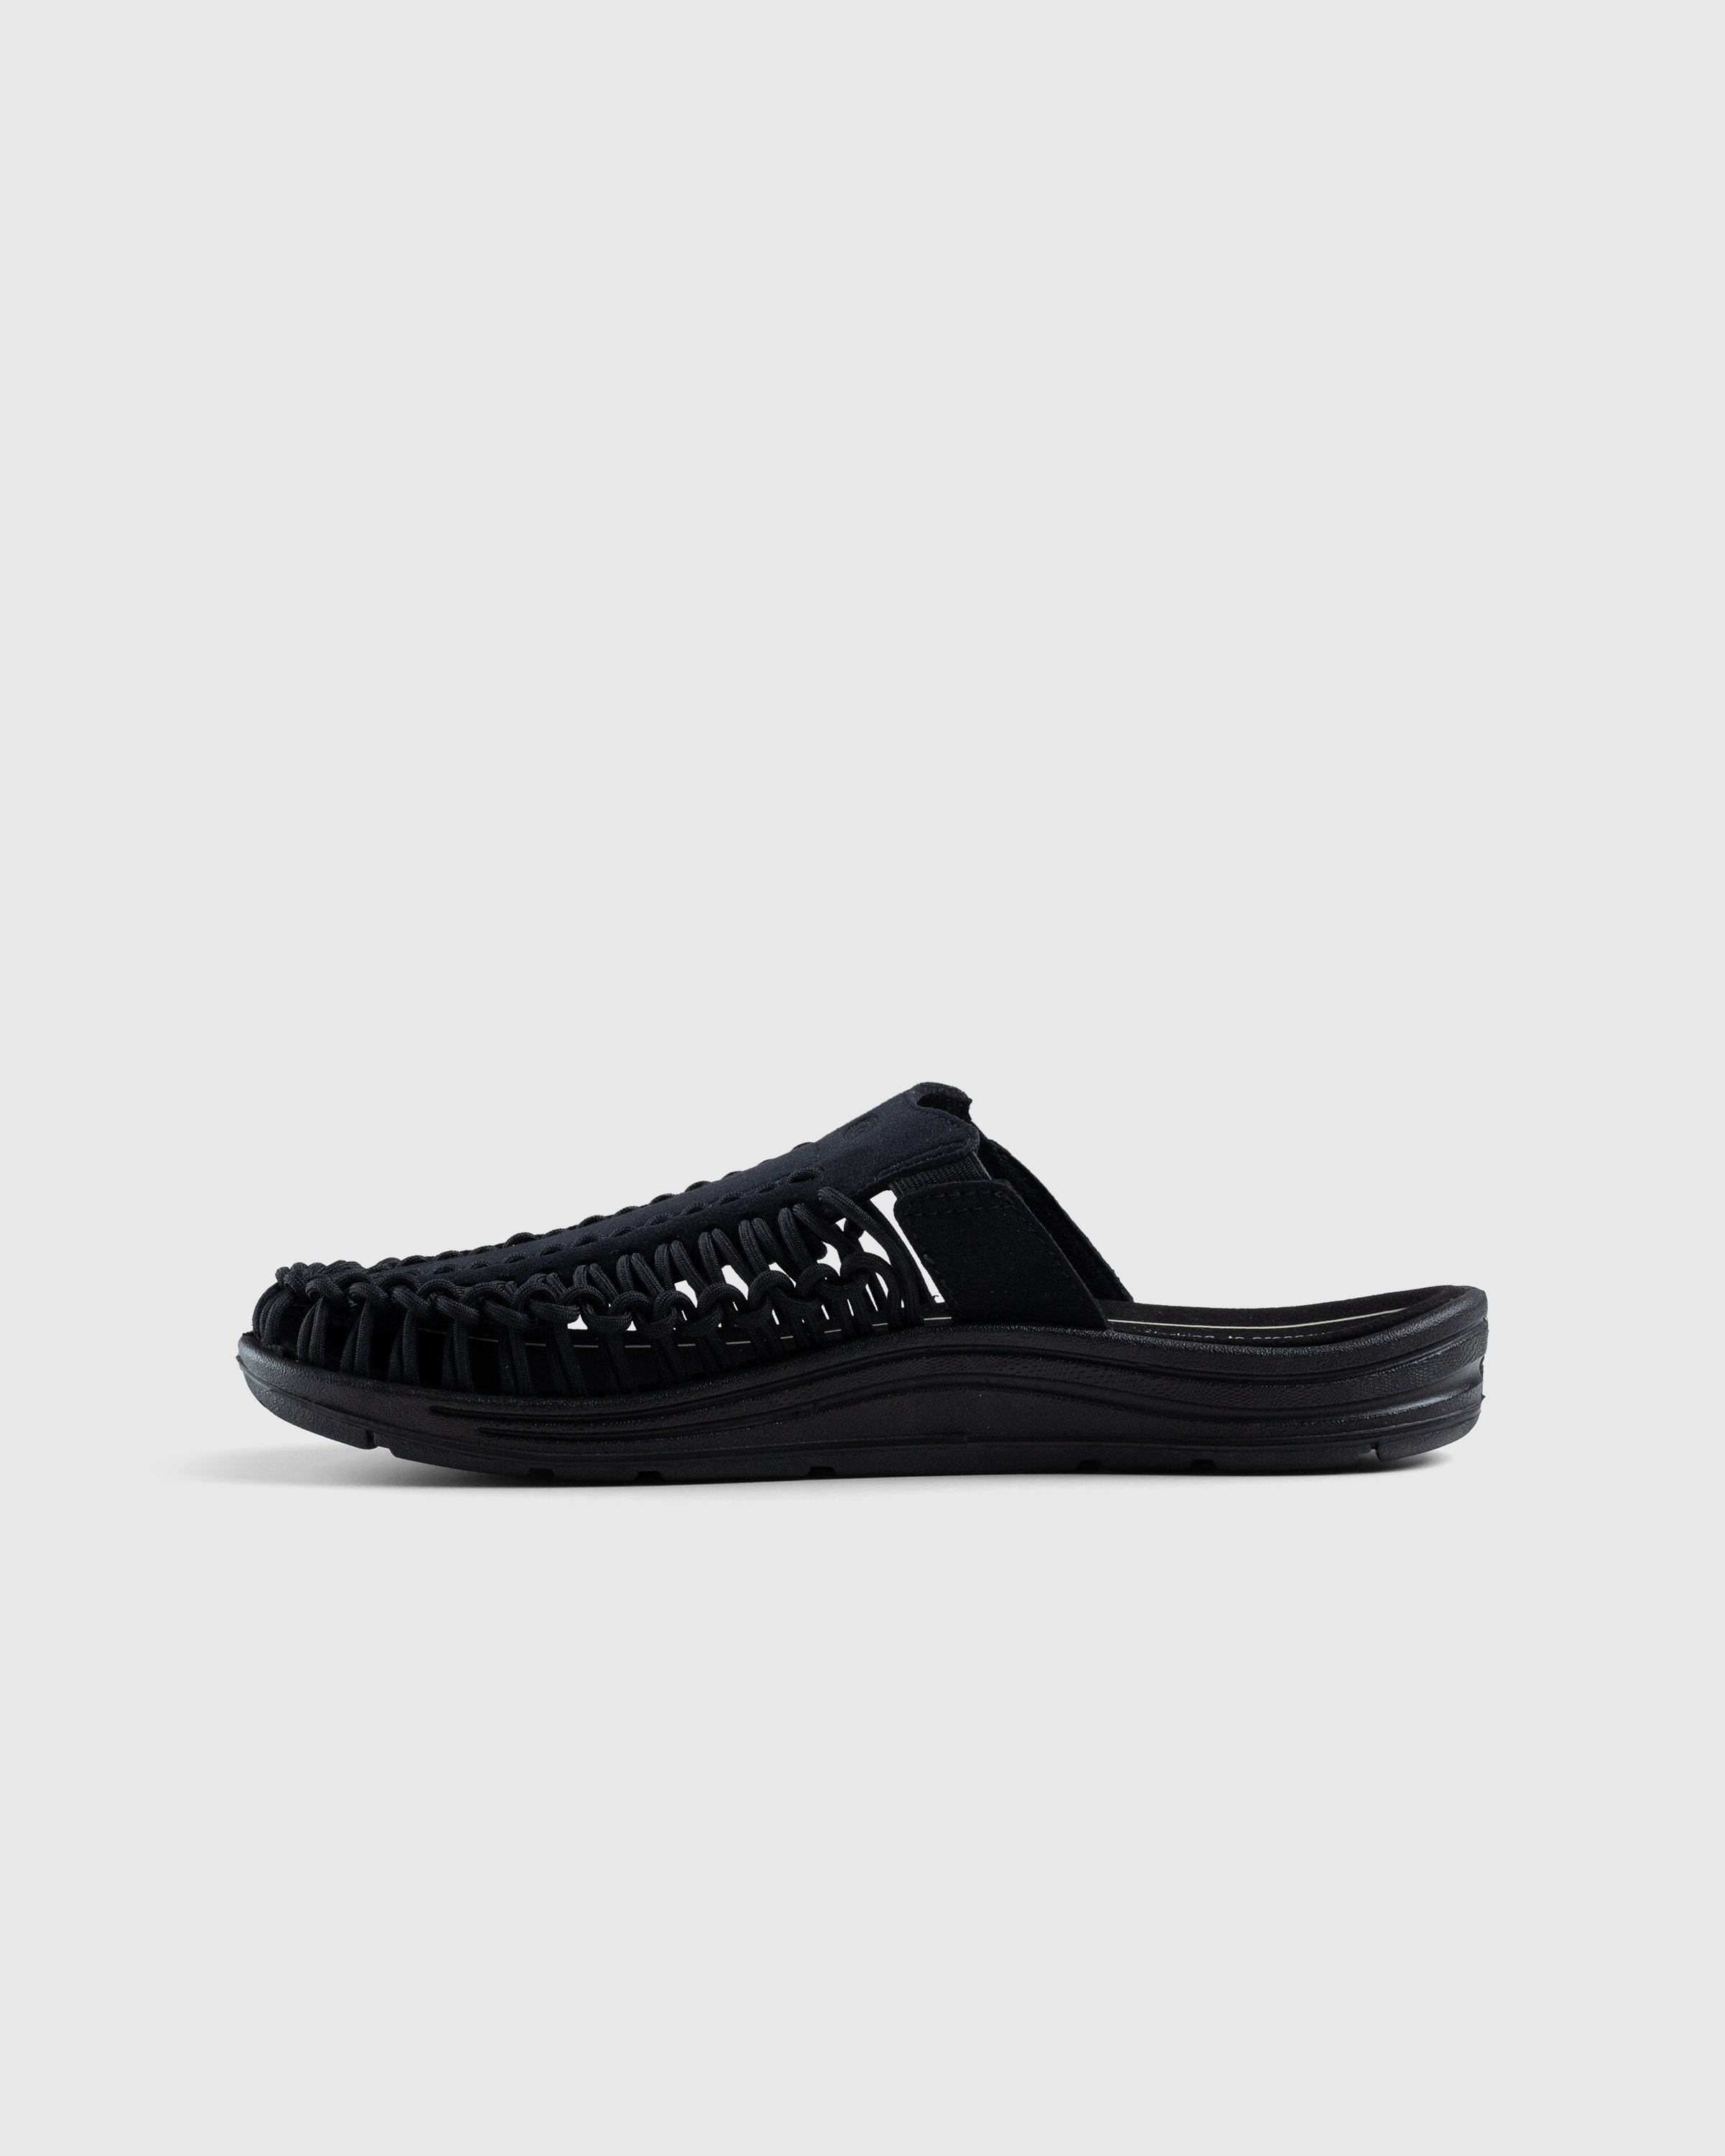 Keen - Uneek II Slide Black - Footwear - Black - Image 2